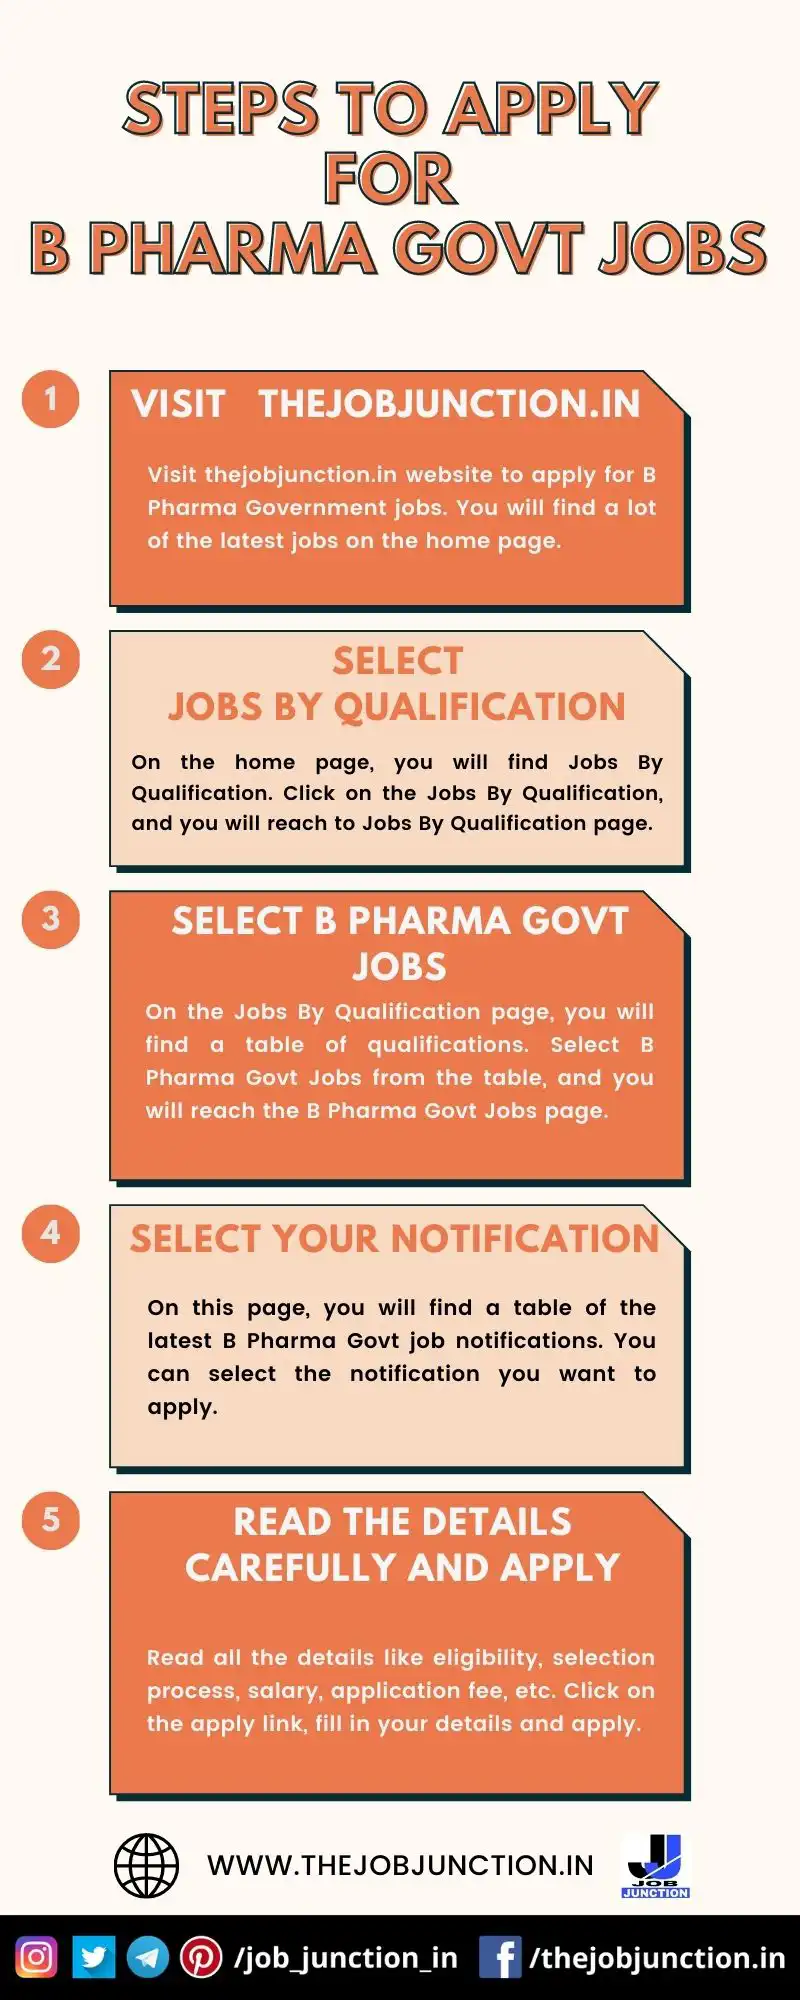 STEPS TO APPLY FOR B PHARMA GOVT JOBS